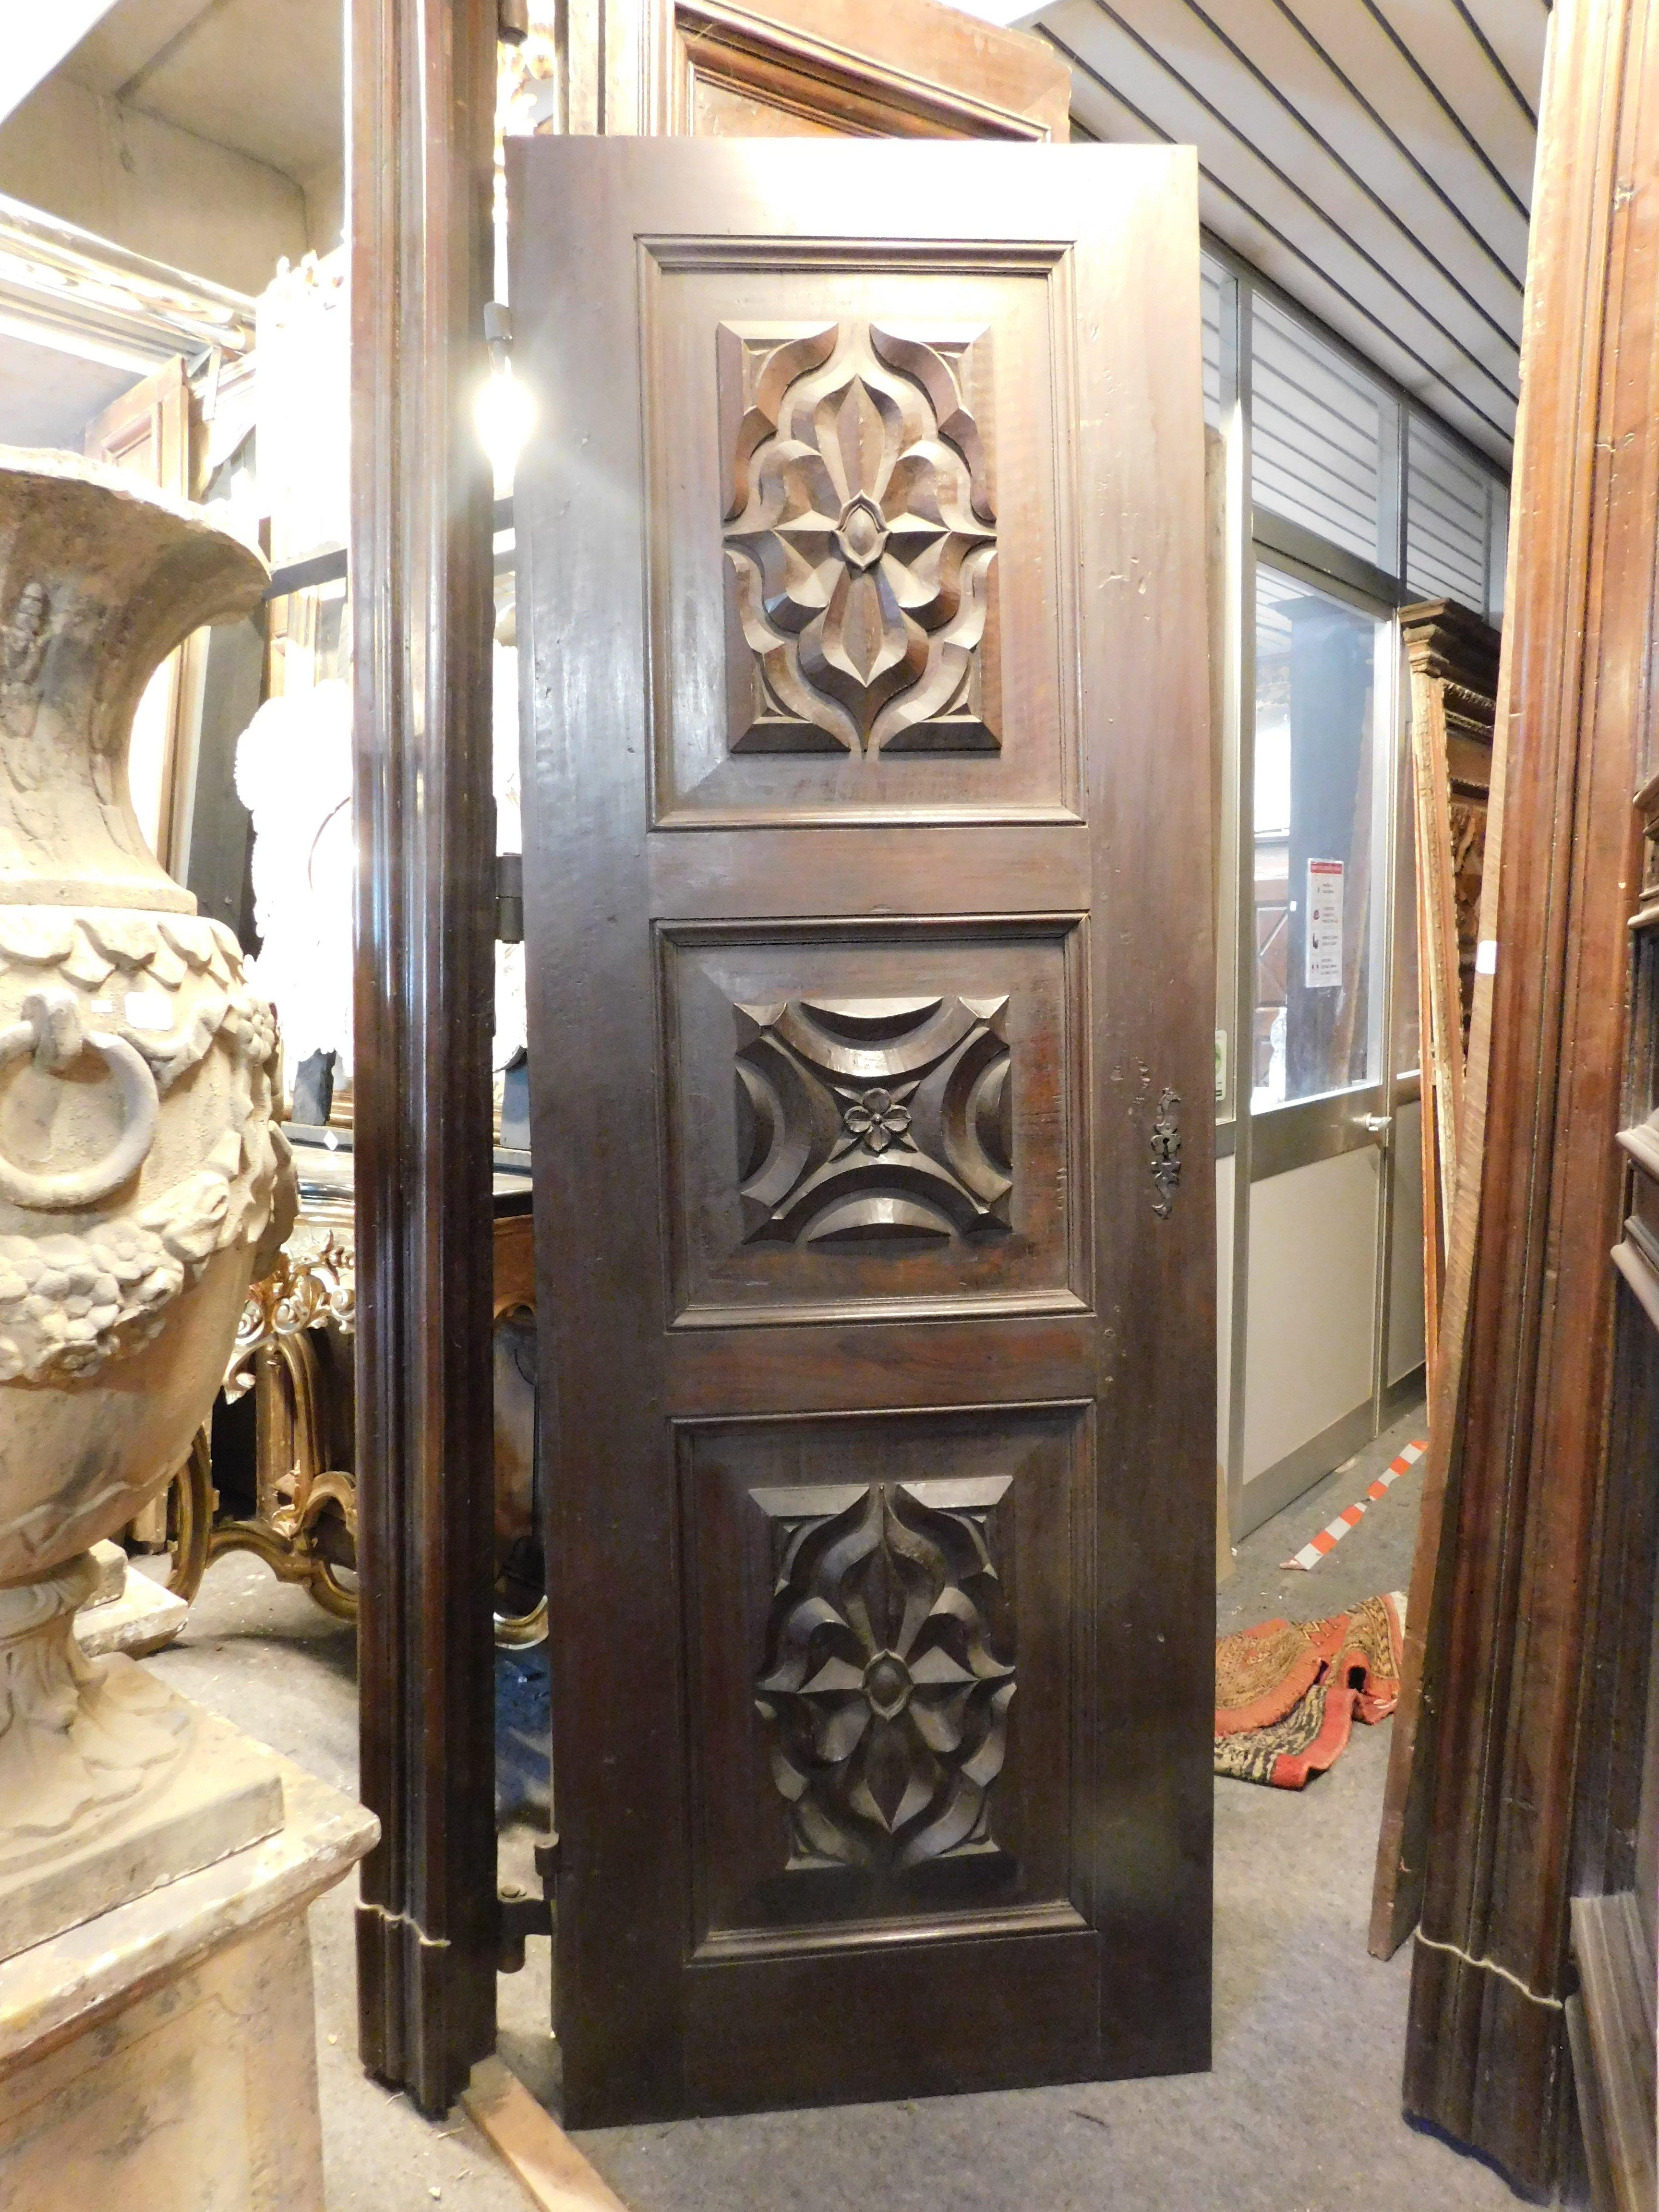 N.4 portes anciennes en noyer massif, richement sculptées à la main avec des carreaux baroques en toile d'araignée, construites par un artisan des années 1600 en Italie pour un important palais noble.
Dos lisse à finir mais avec aiguilles papillon